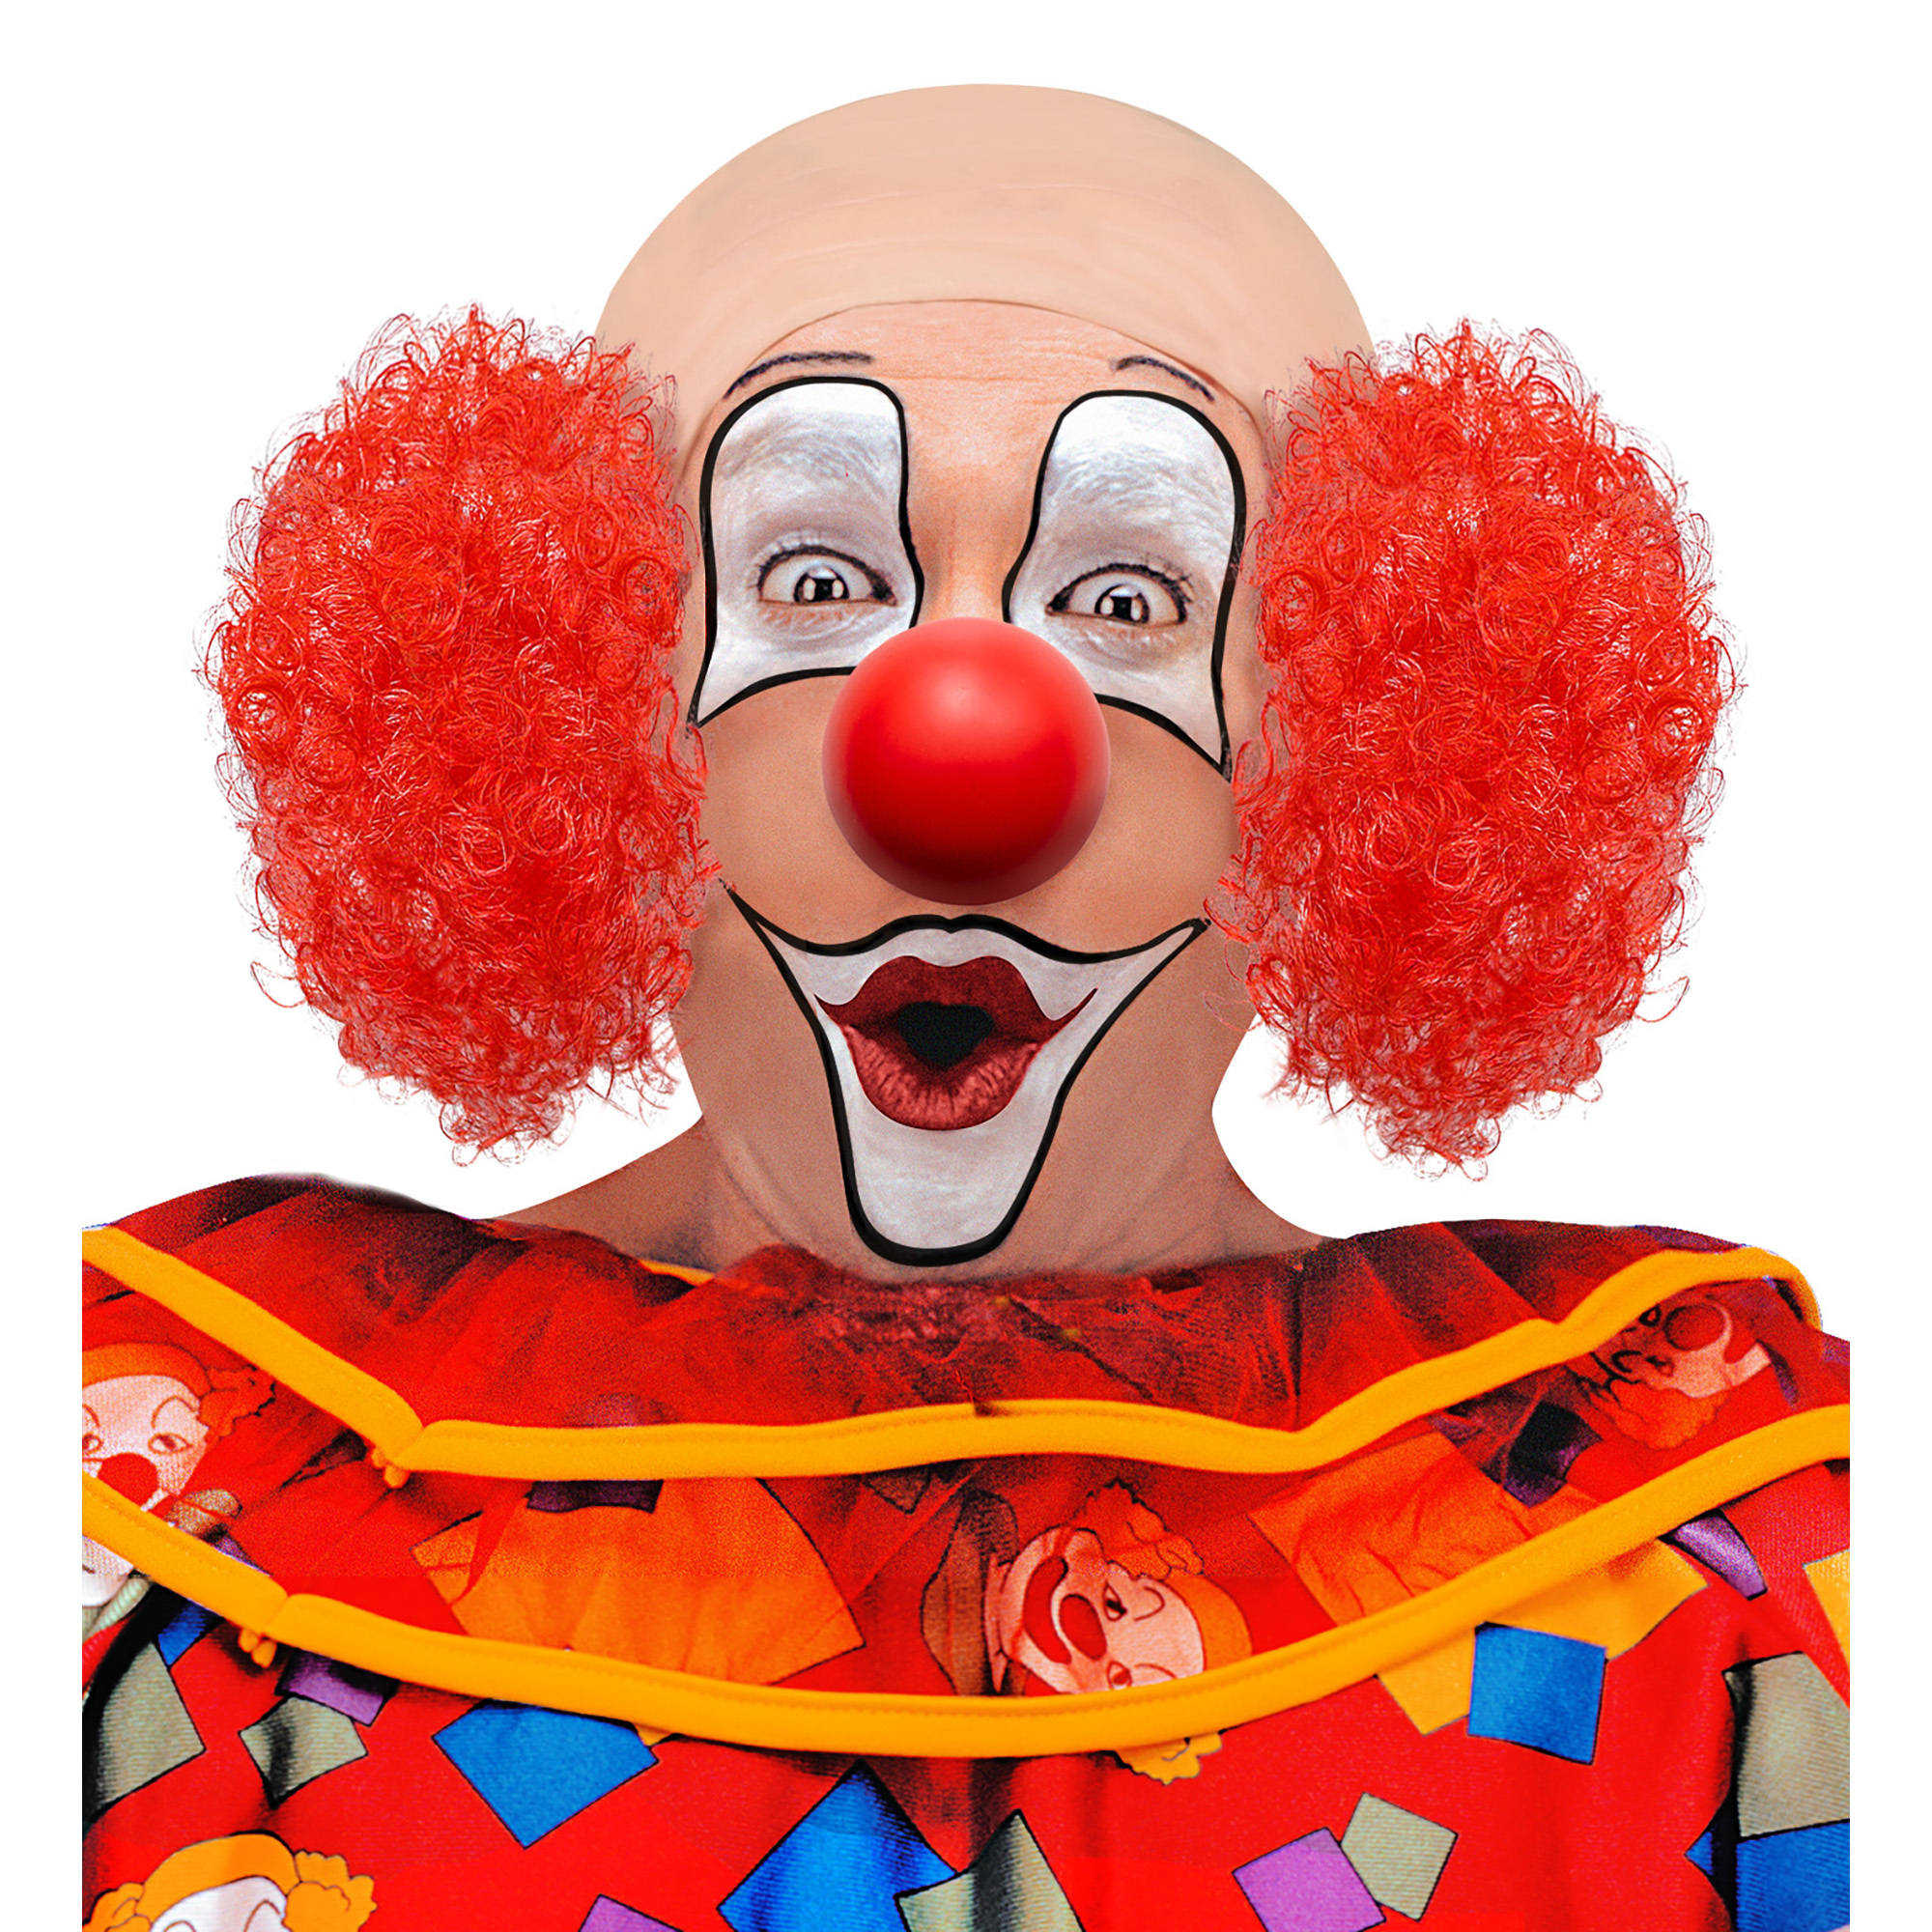 hoofdstuk clown met rood haar